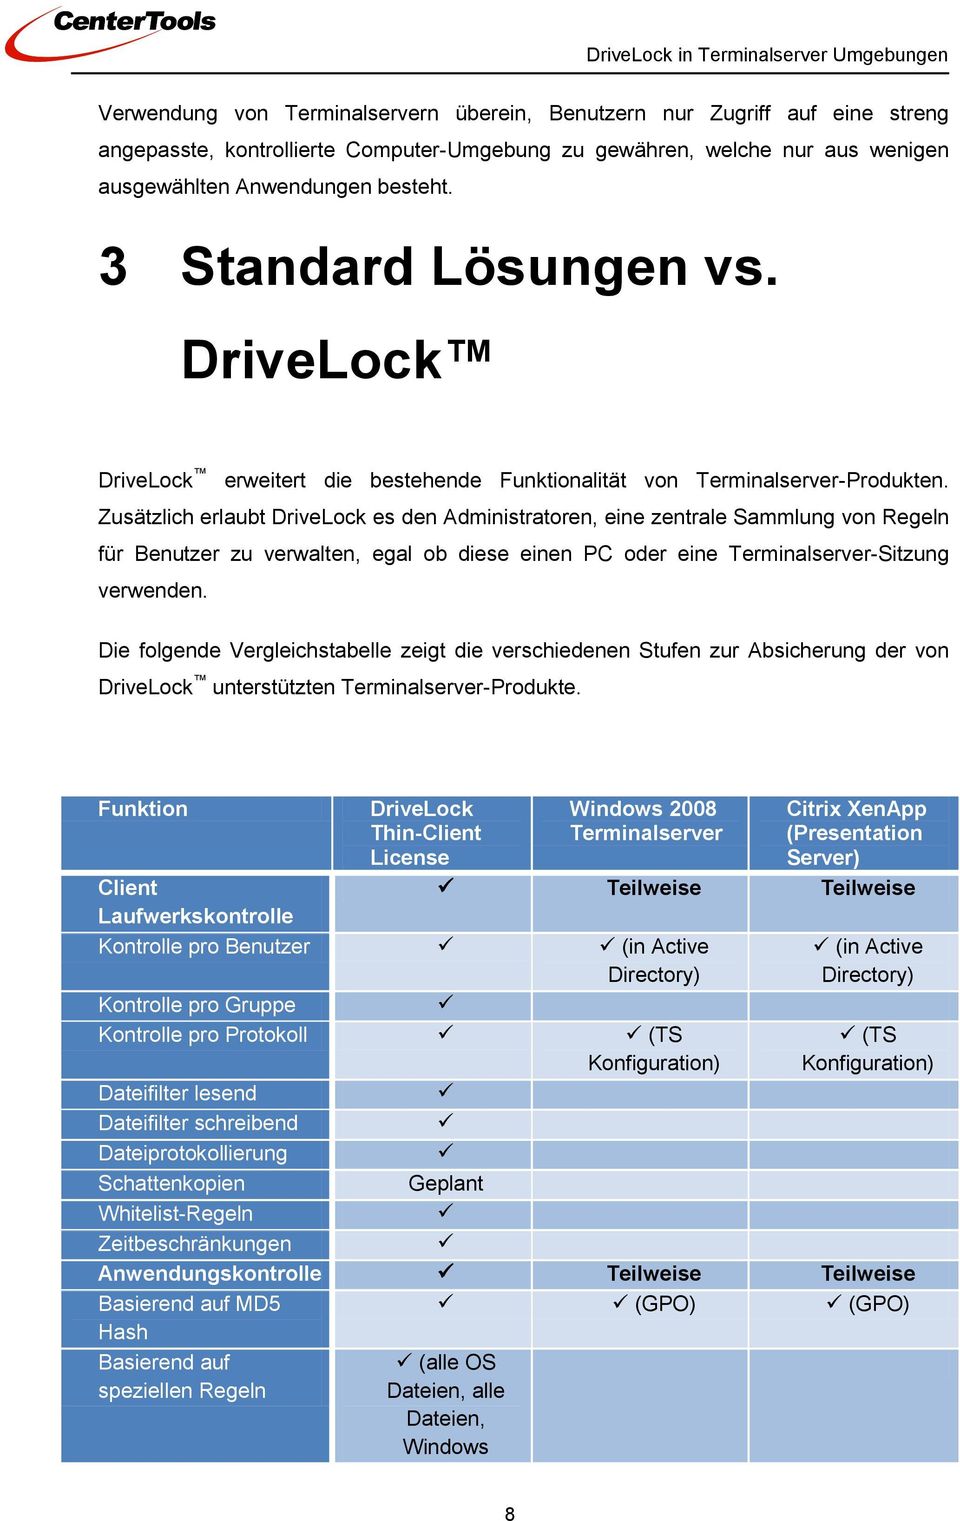 Zusätzlich erlaubt DriveLock es den Administratoren, eine zentrale Sammlung von Regeln für Benutzer zu verwalten, egal ob diese einen PC oder eine Terminalserver-Sitzung verwenden.